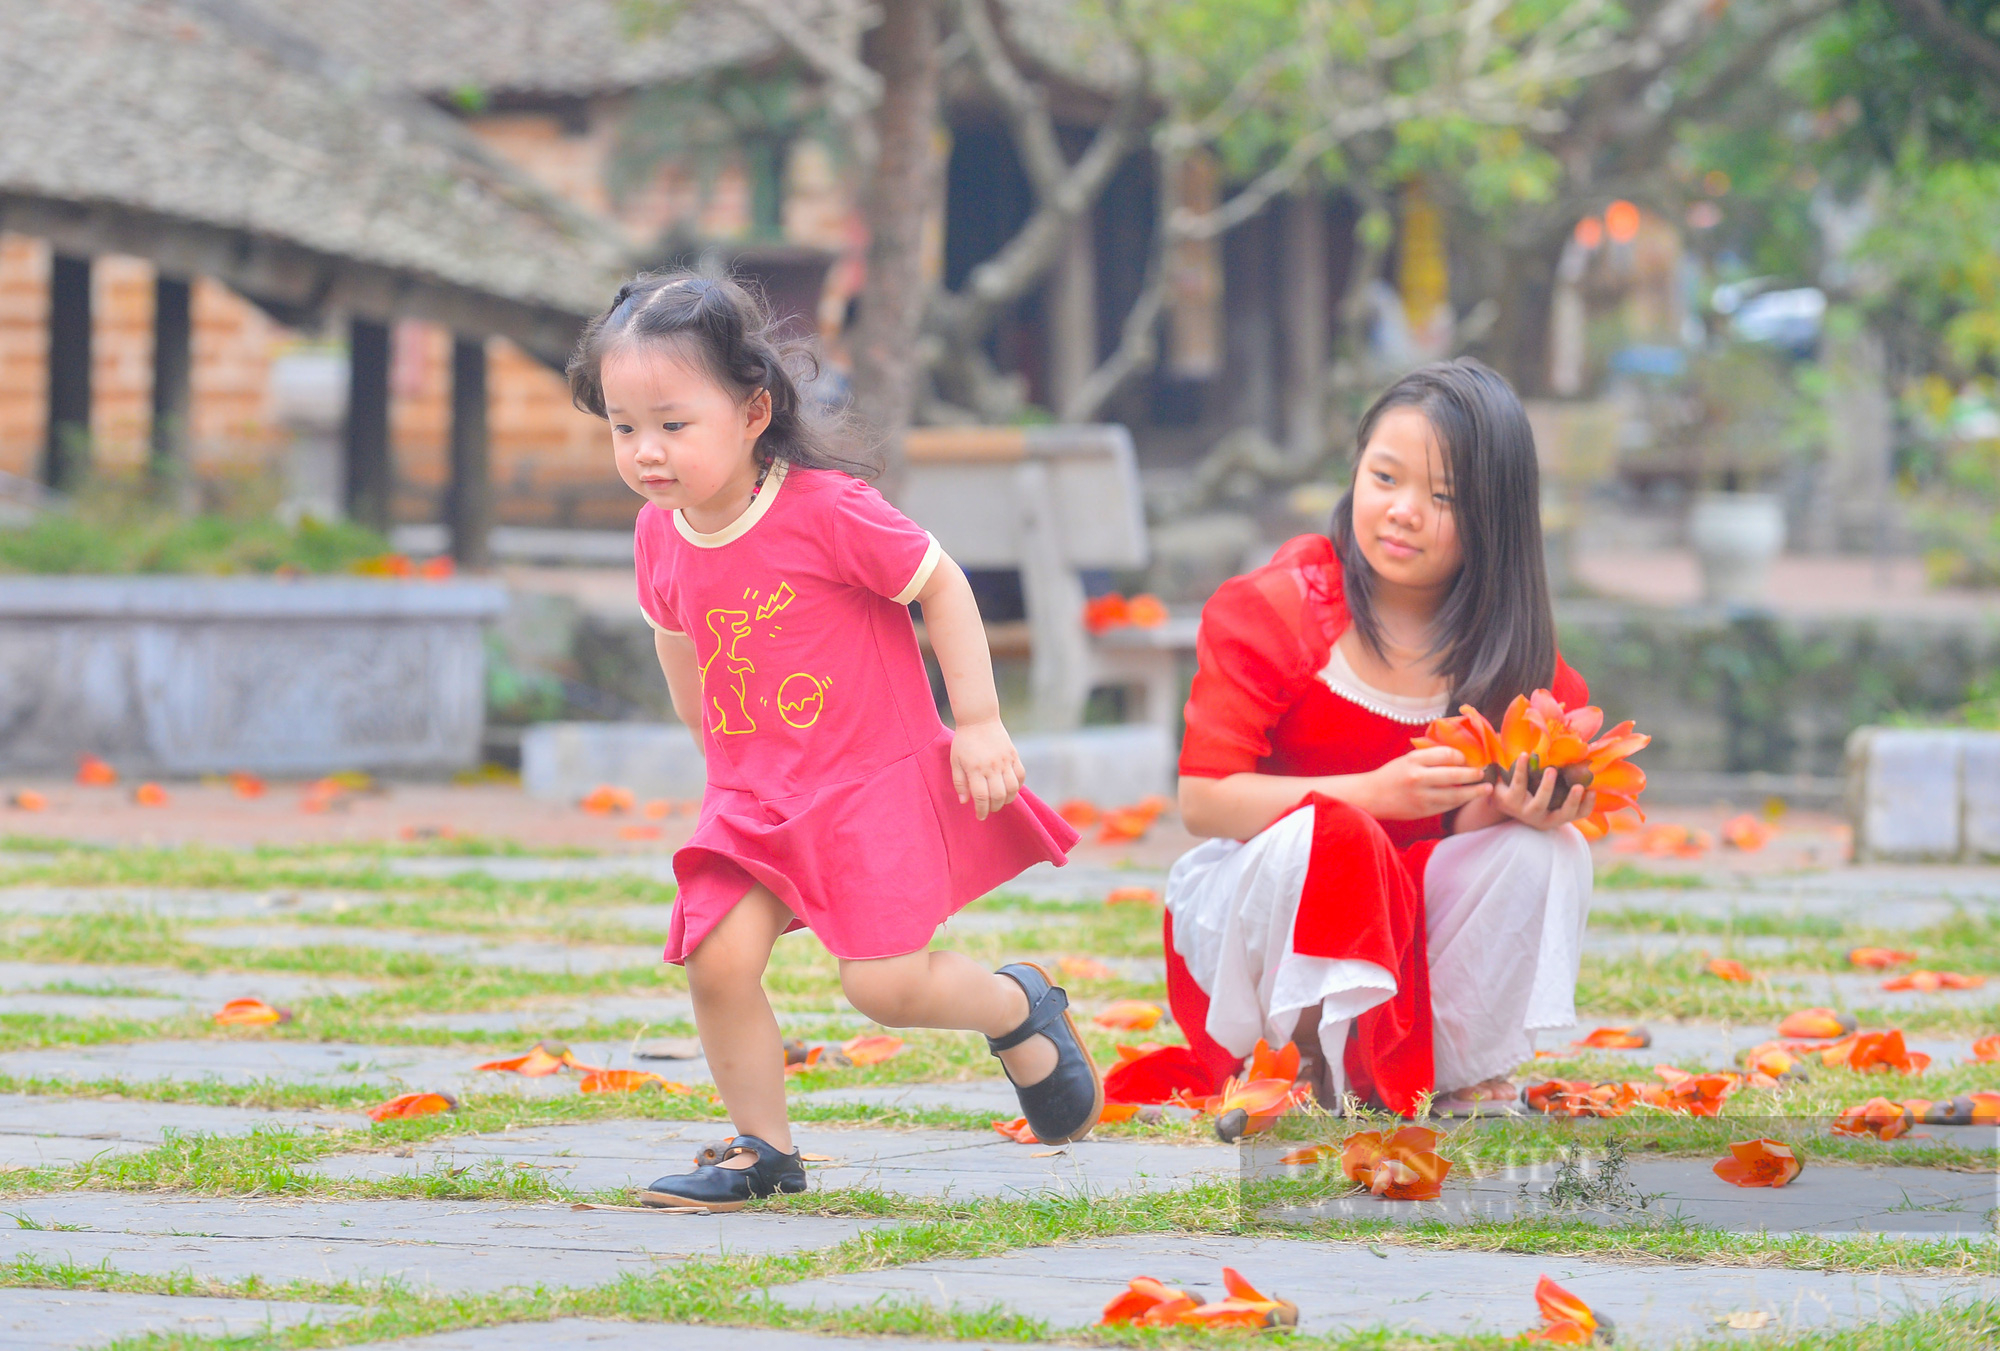 Hoa gạo nở đỏ rực bên ngôi chùa nghìn năm tuổi tại Hà Nội - Ảnh 8.